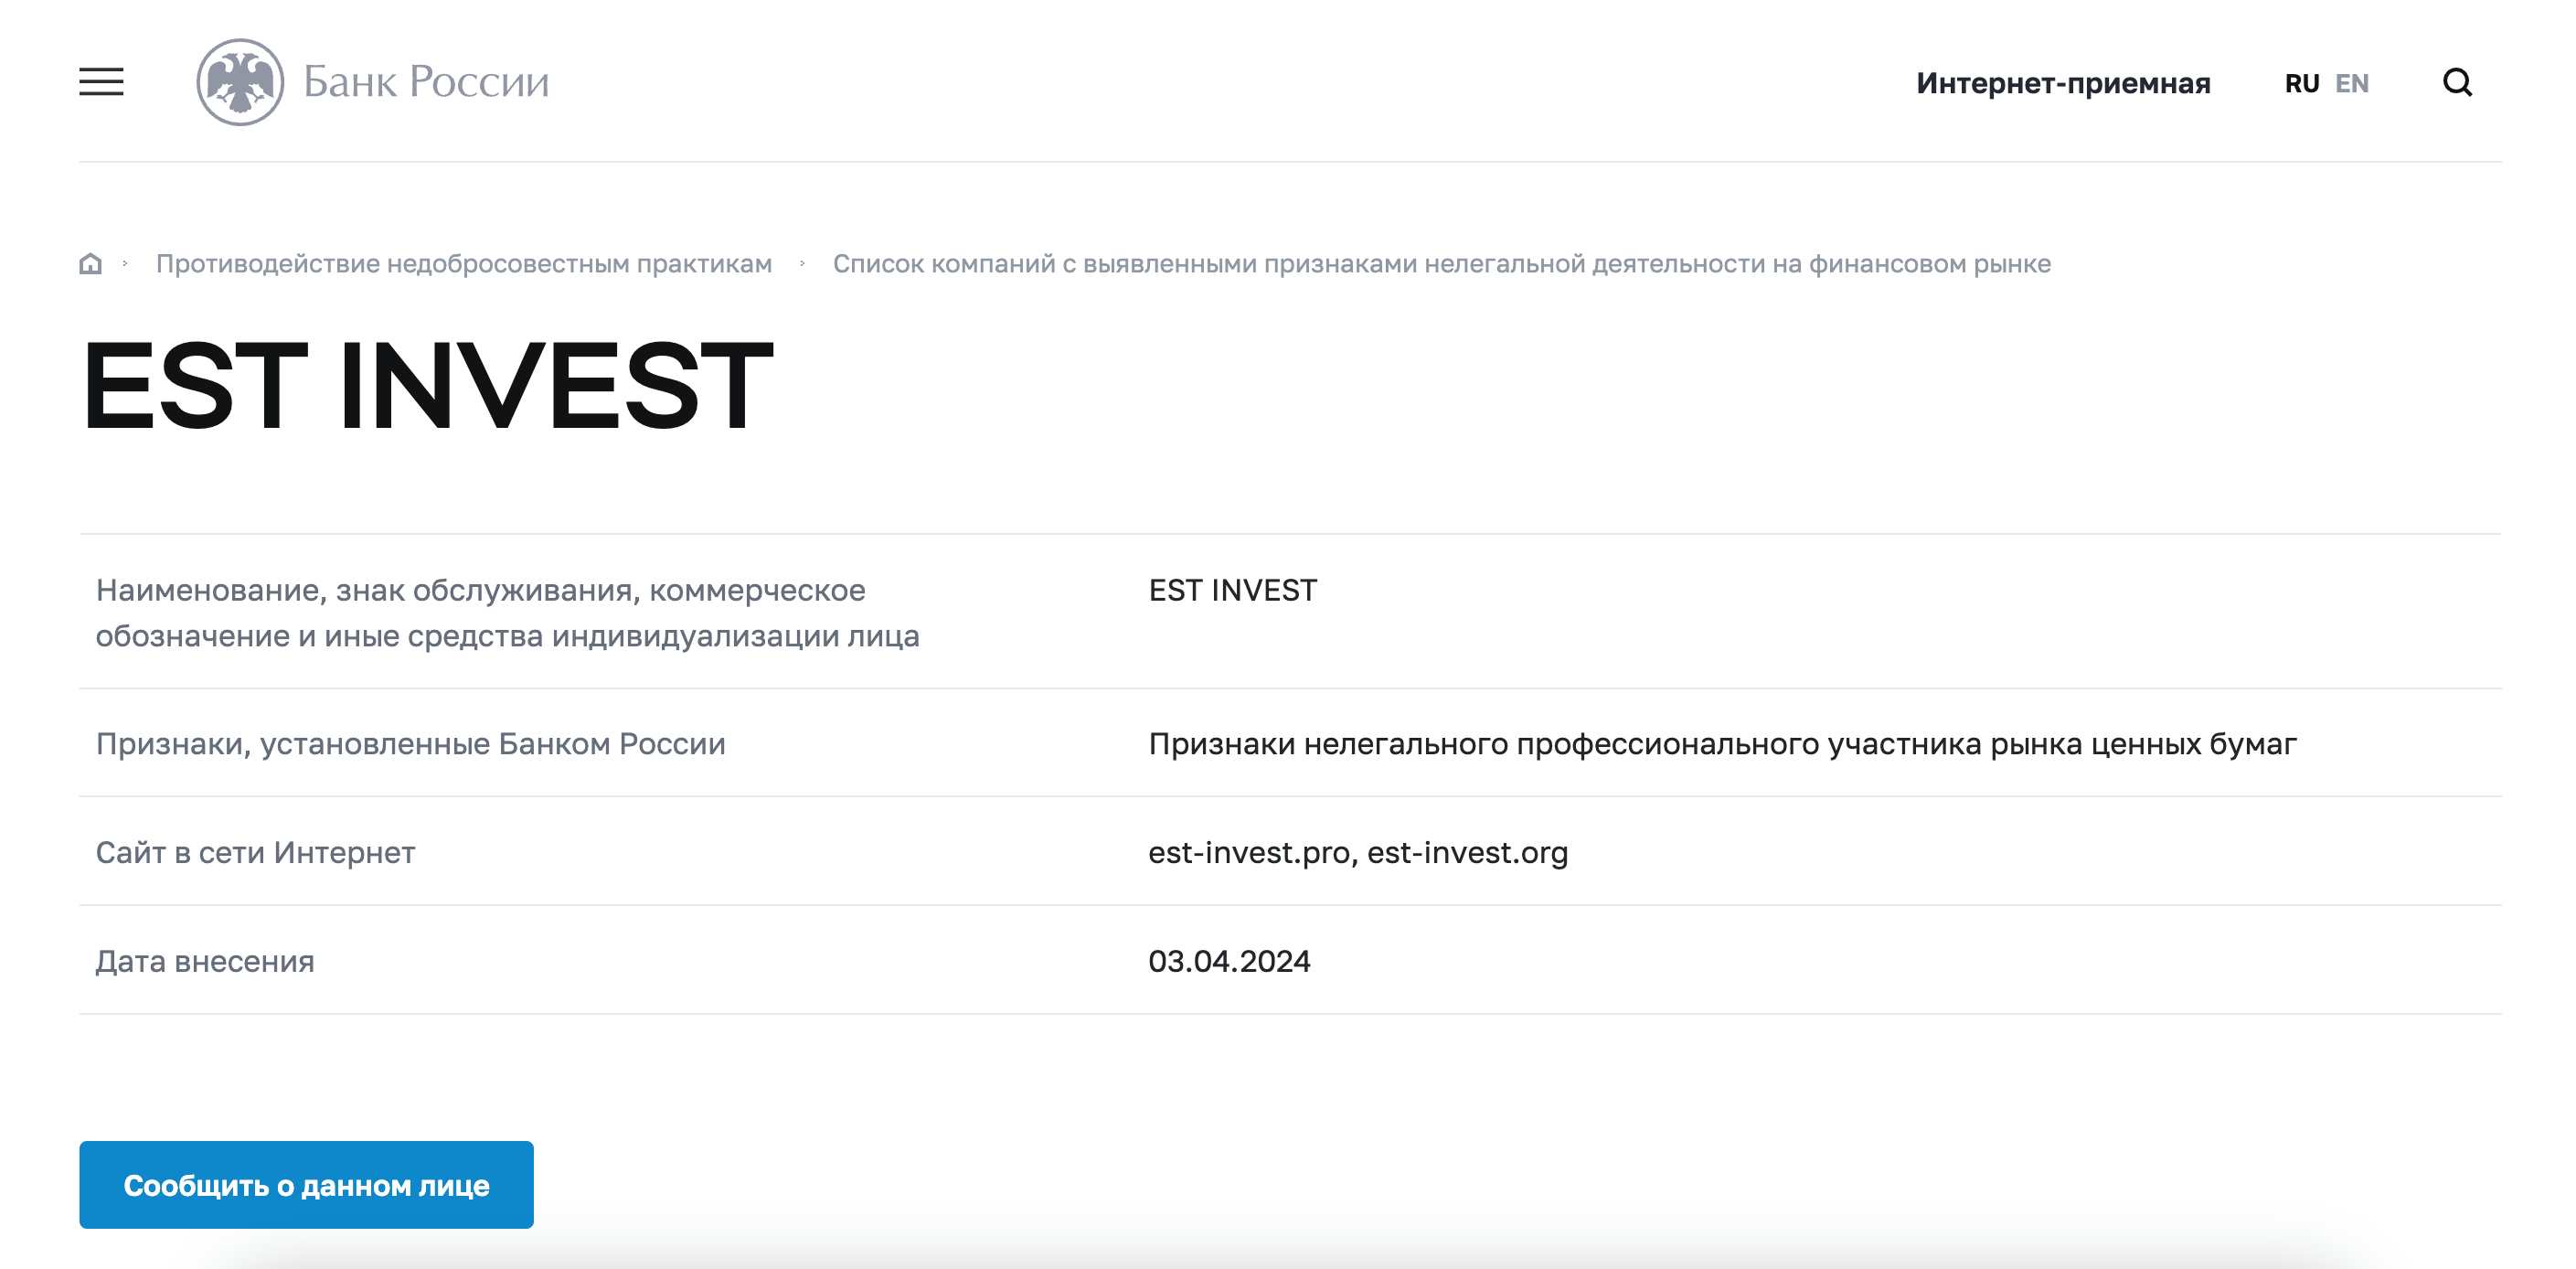 Est Invest — перспективный проект для инвестиций или очередная ловушка?